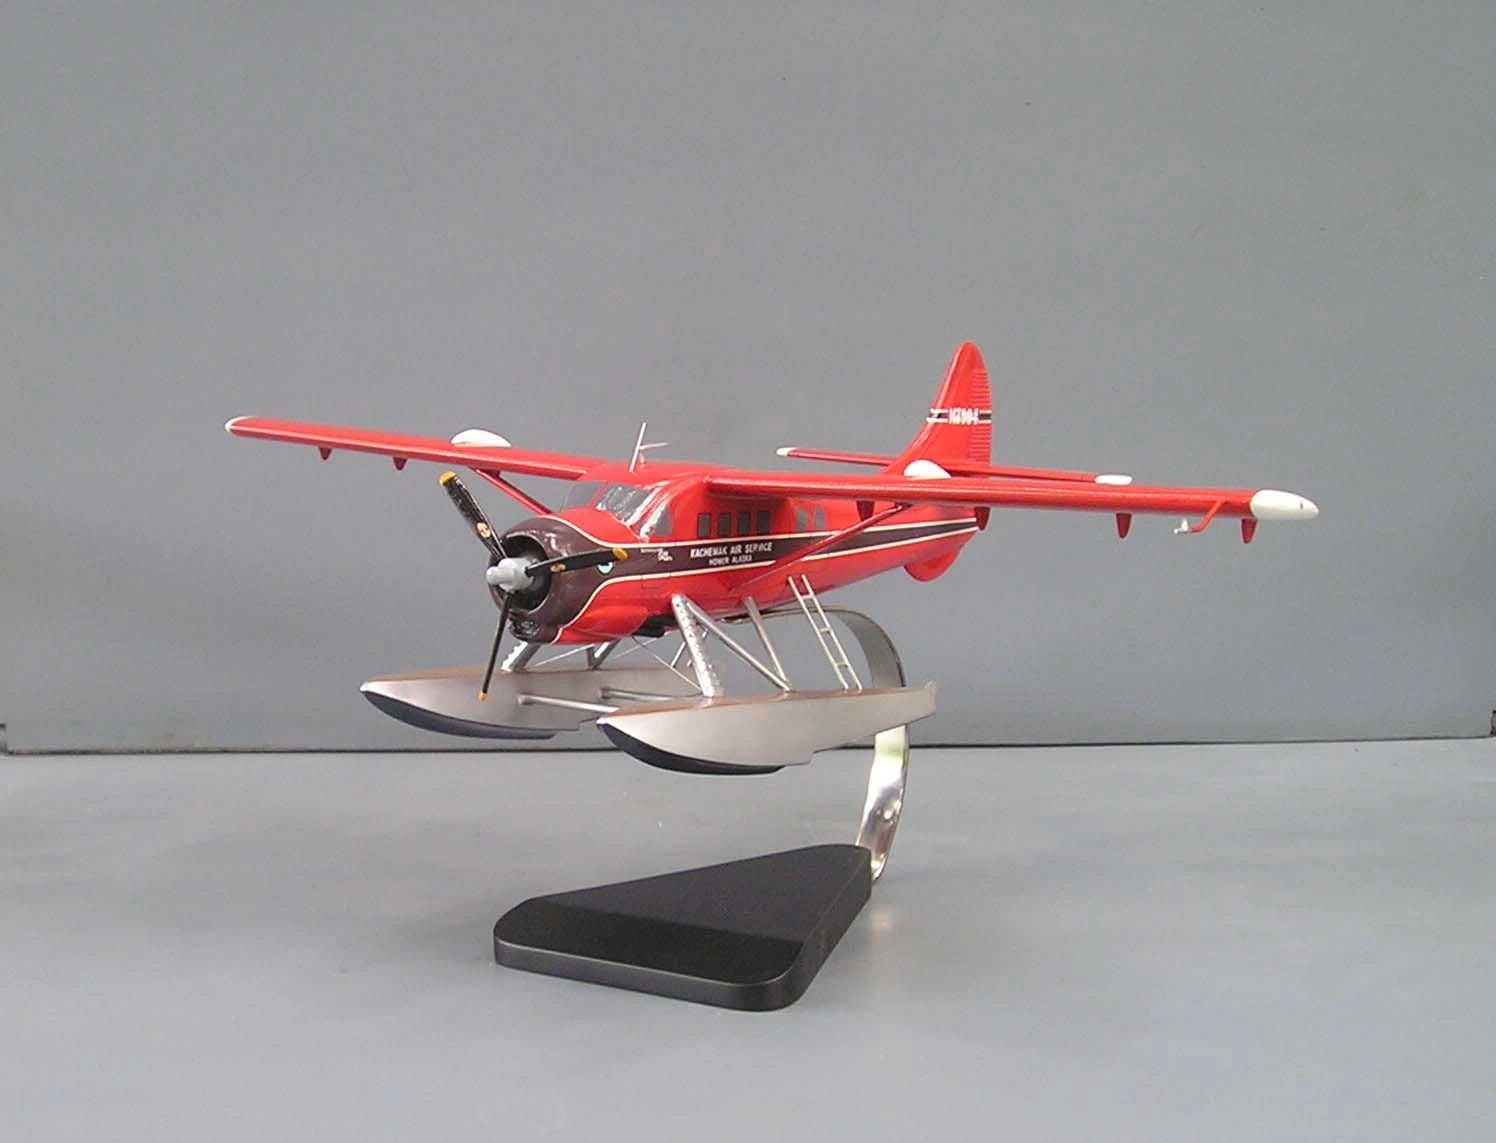 DHC-3 Otter custom model